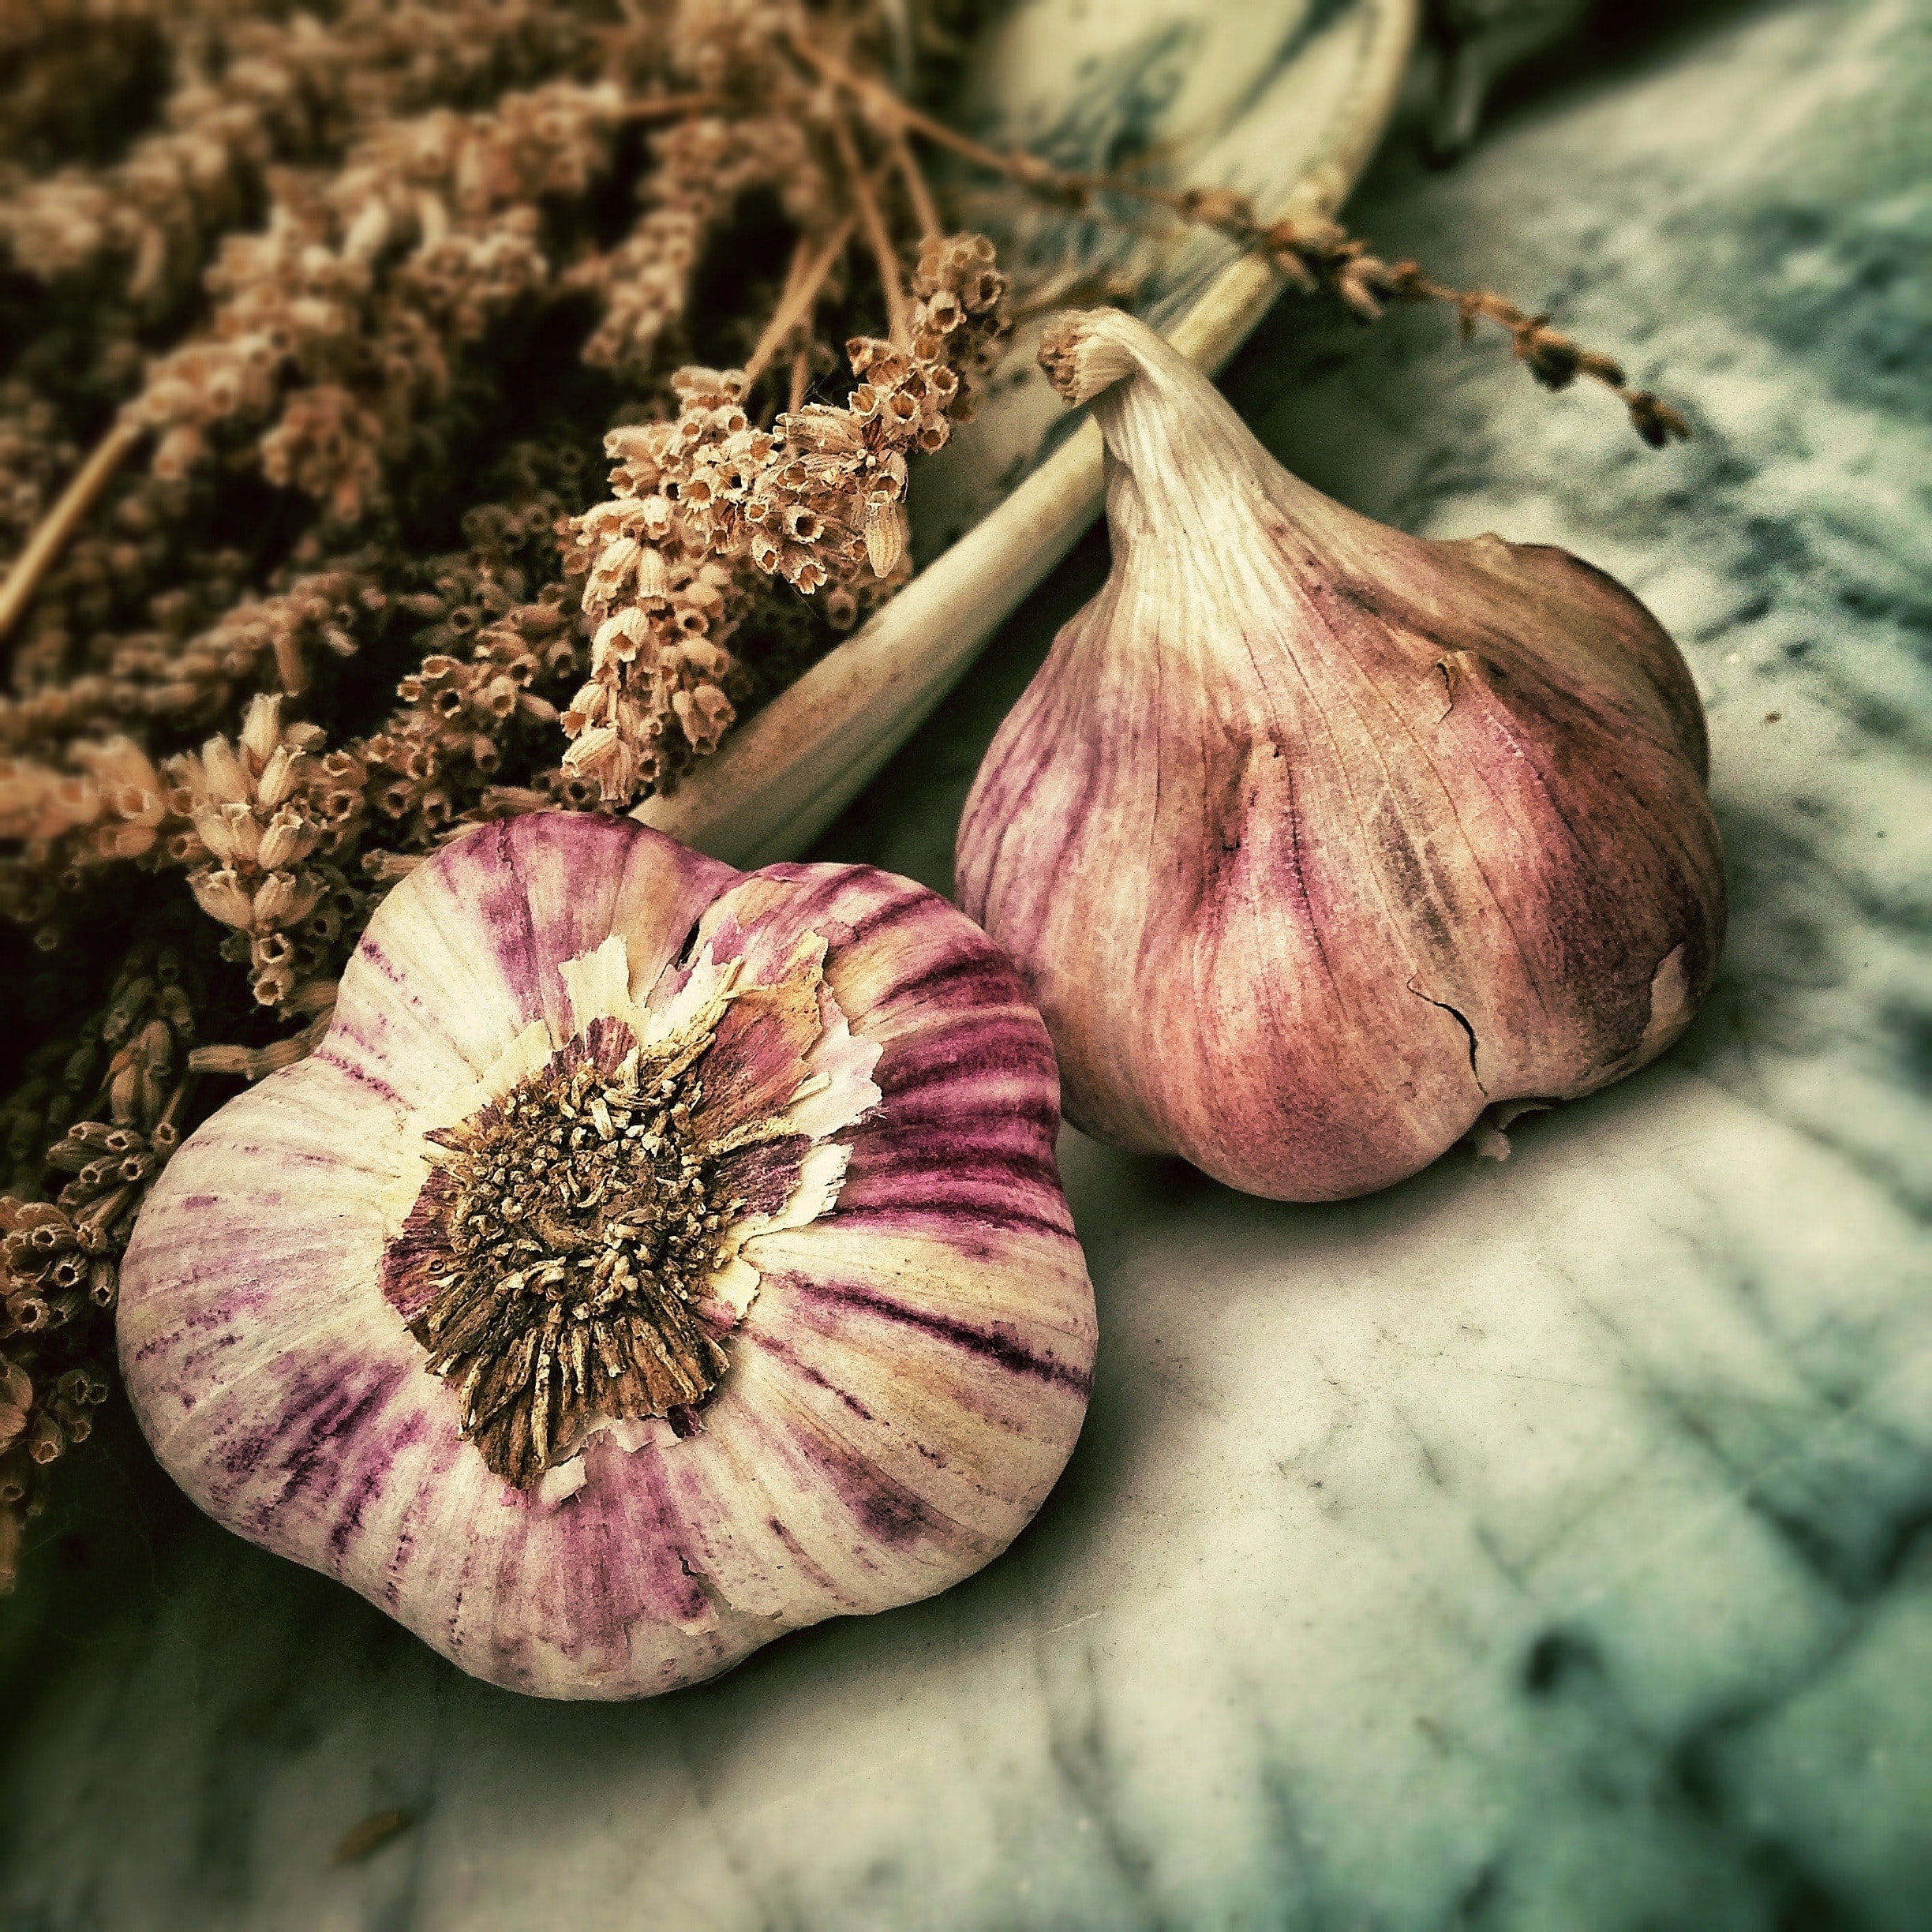 Does Garlic Grow Underground?